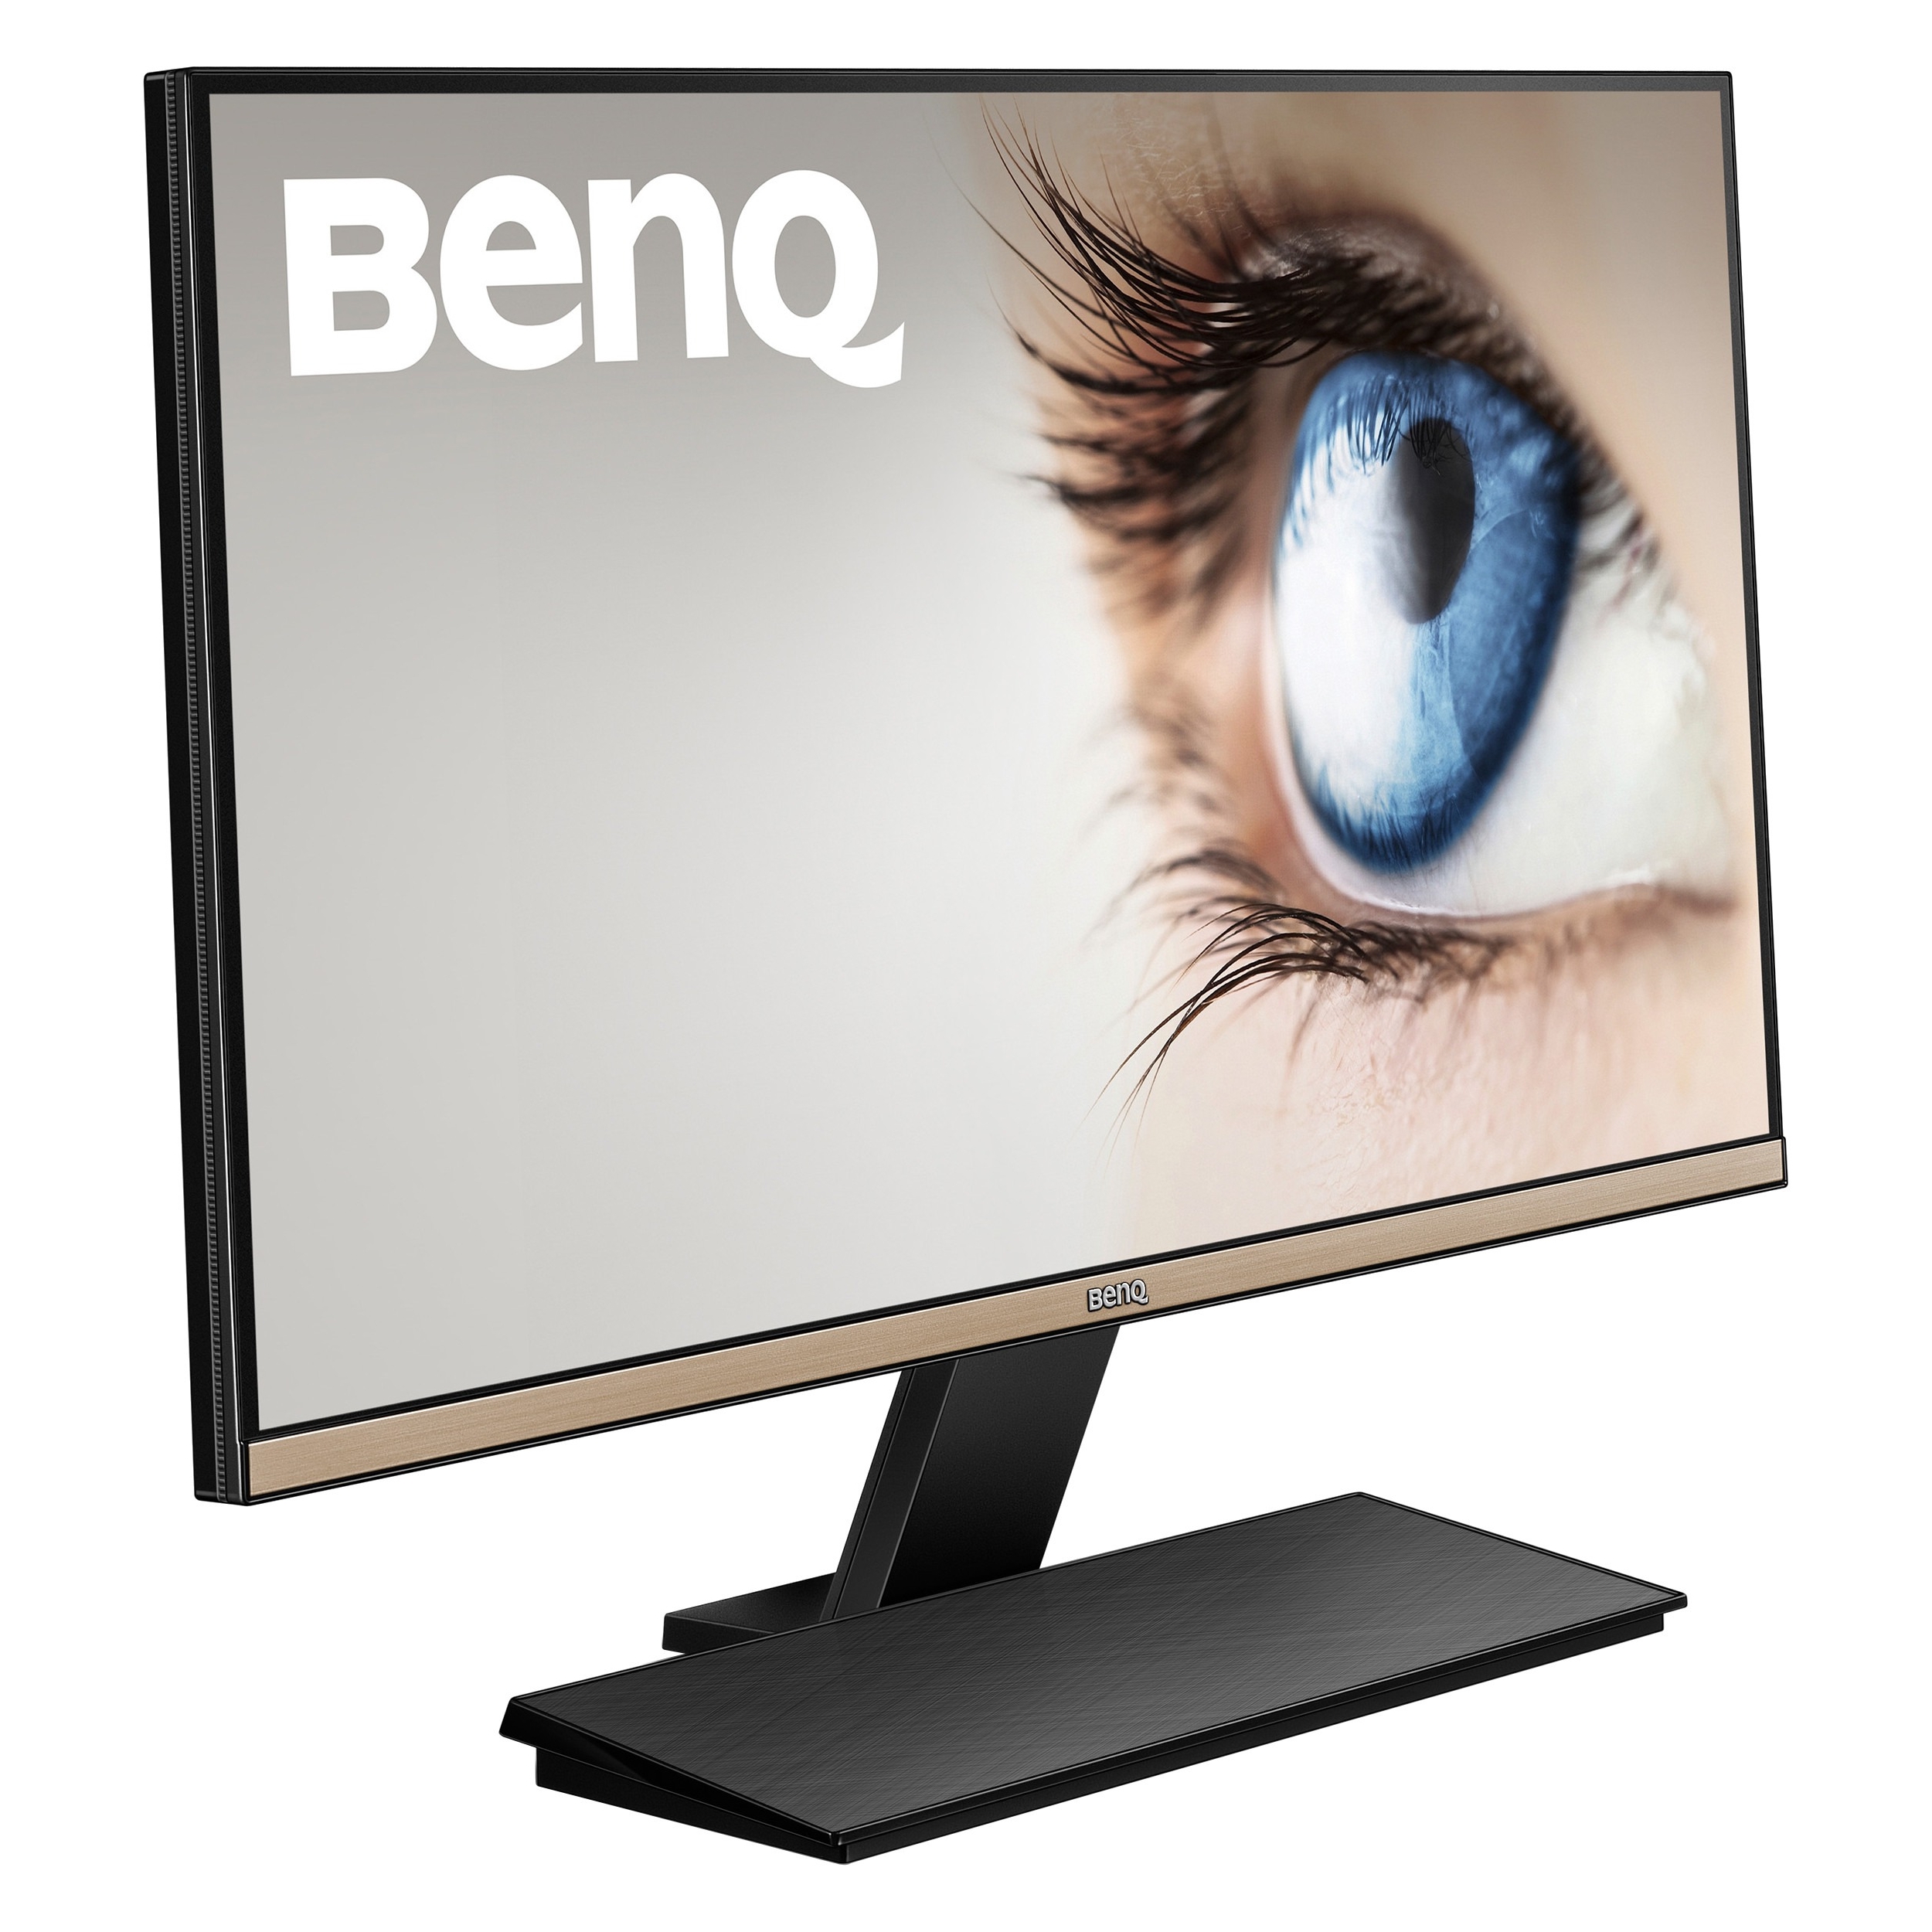 BenQ Eyesafe Certified Low Blue Light Displays